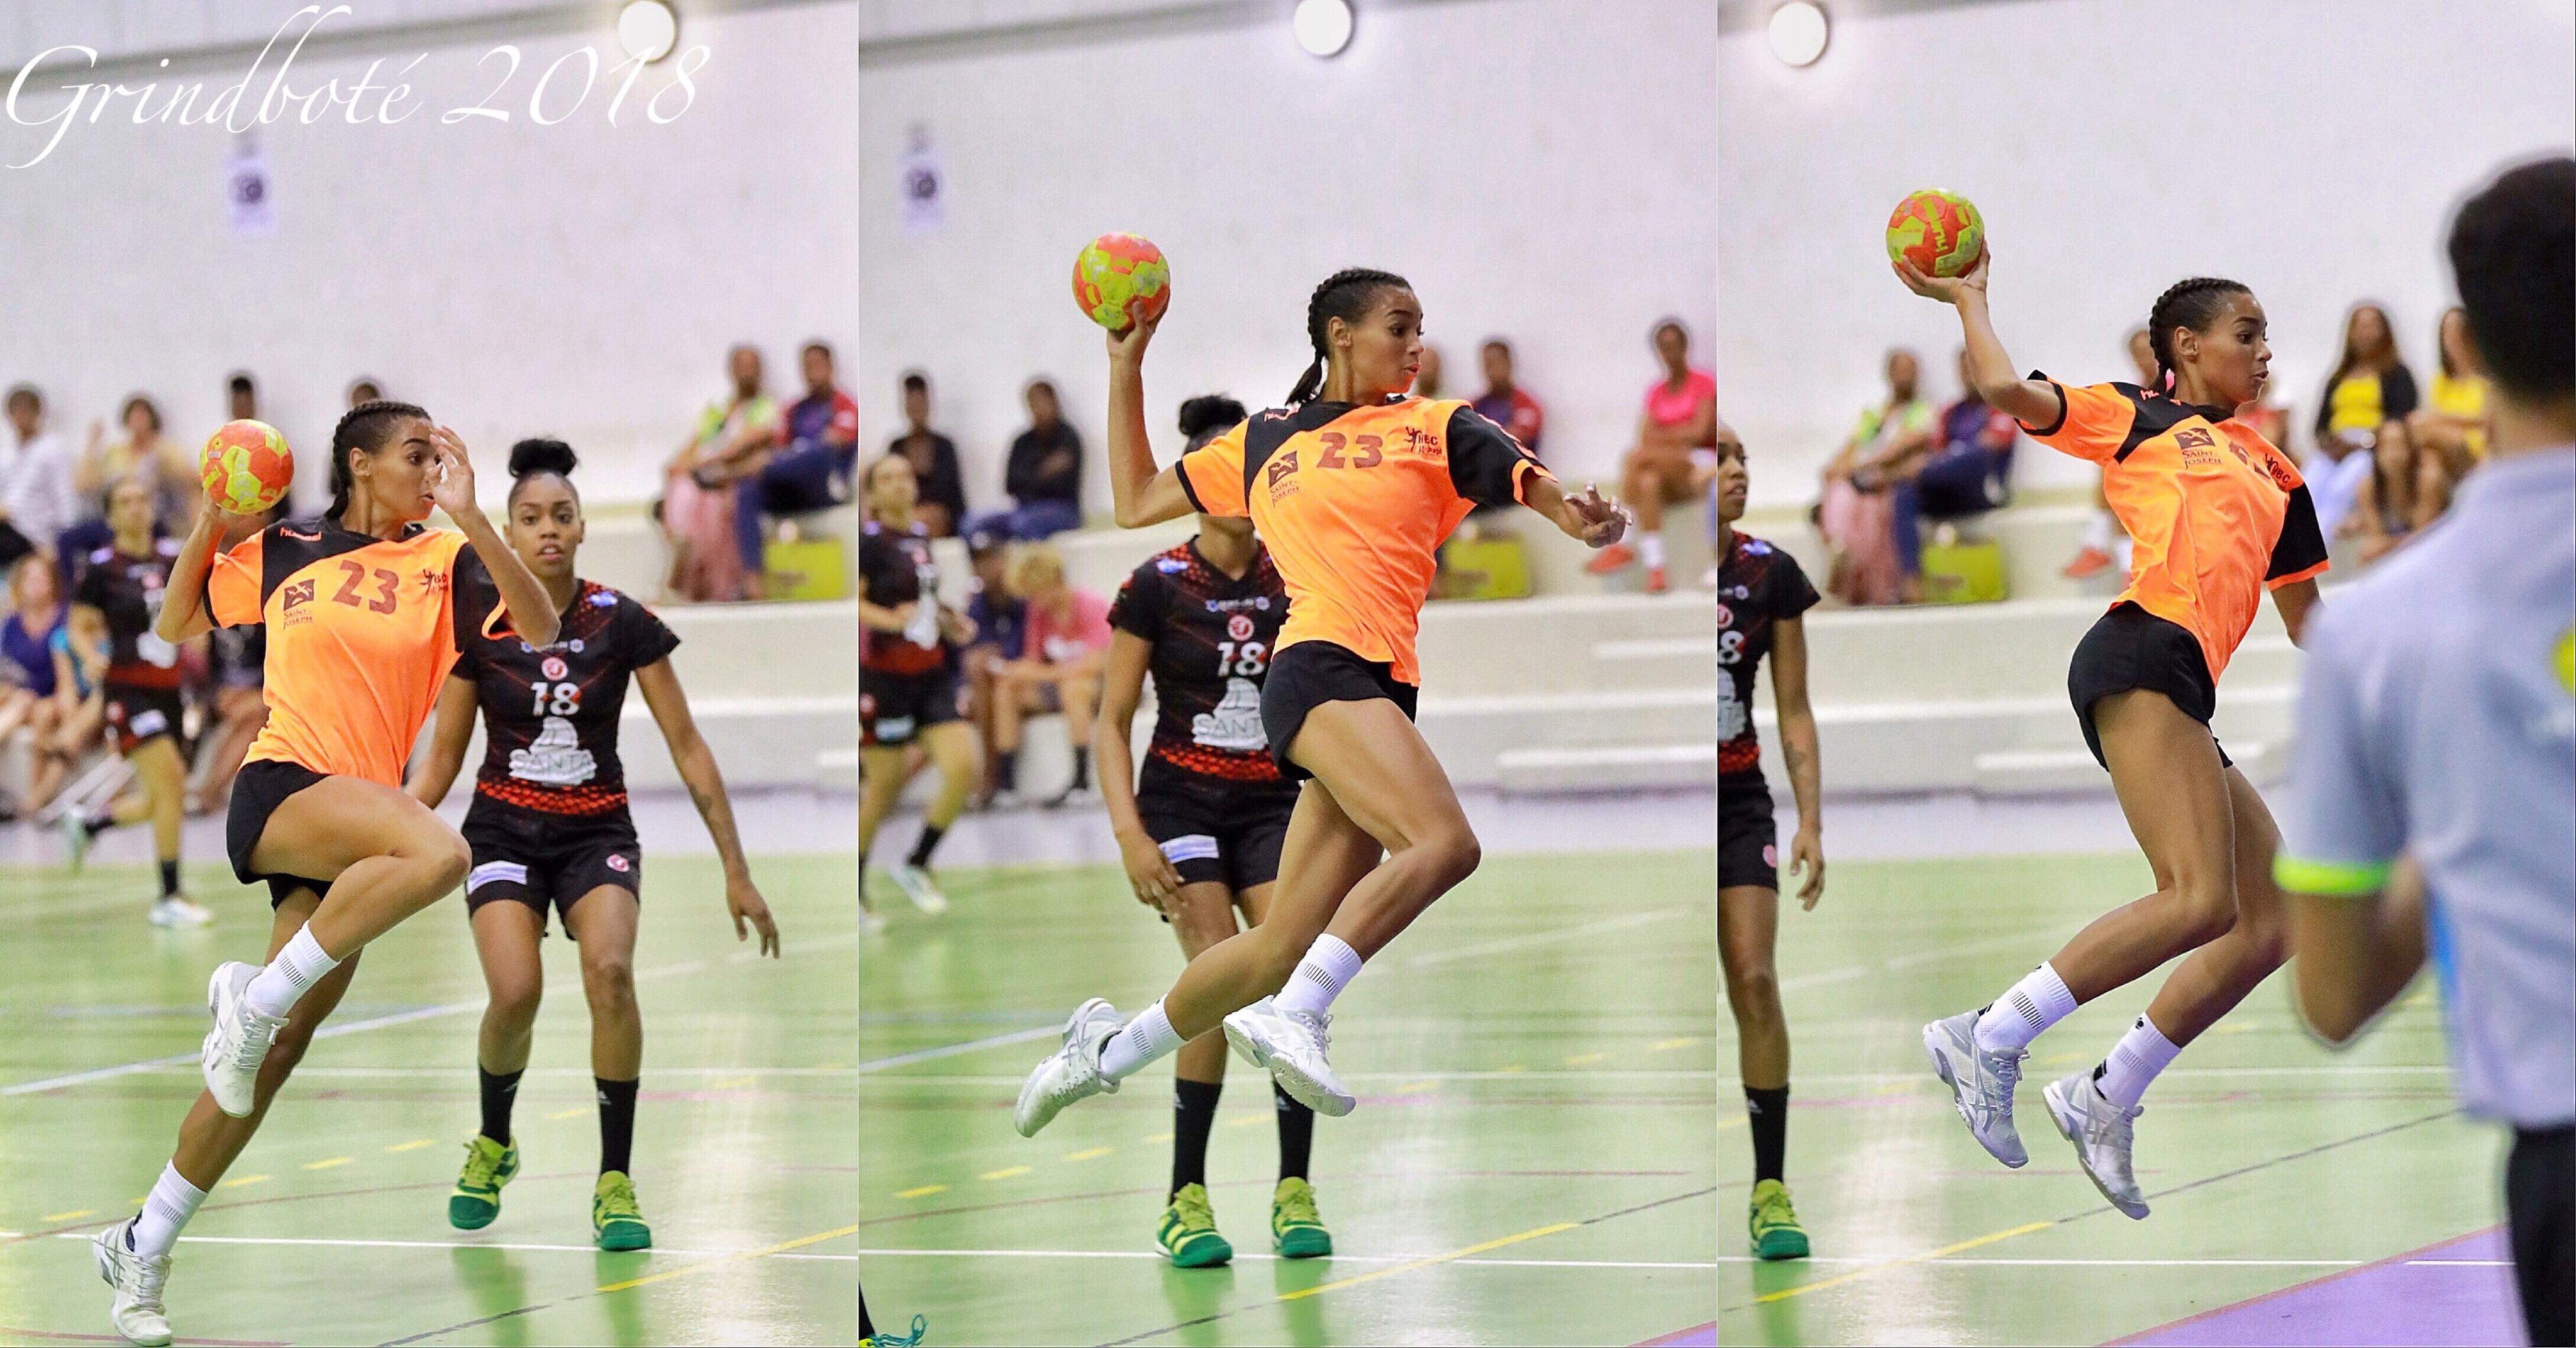 Noémie de Chantilly est une handballeuse talentueuse du club de Saint-Joseph